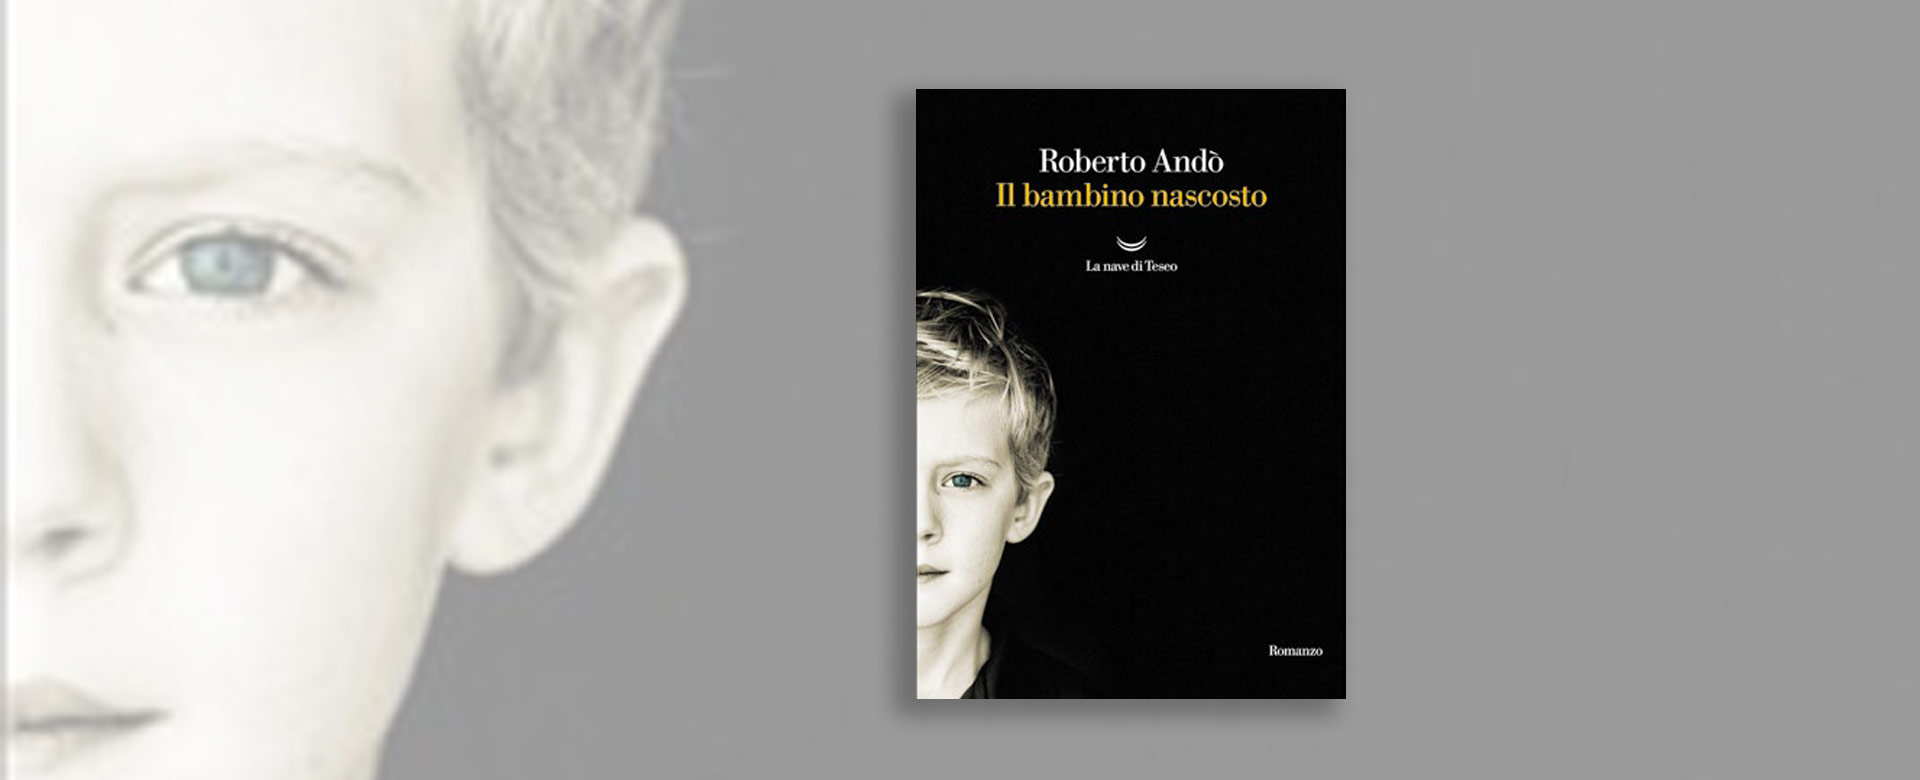 Immagine del libro Il bambino nascosto di Roberto Andò